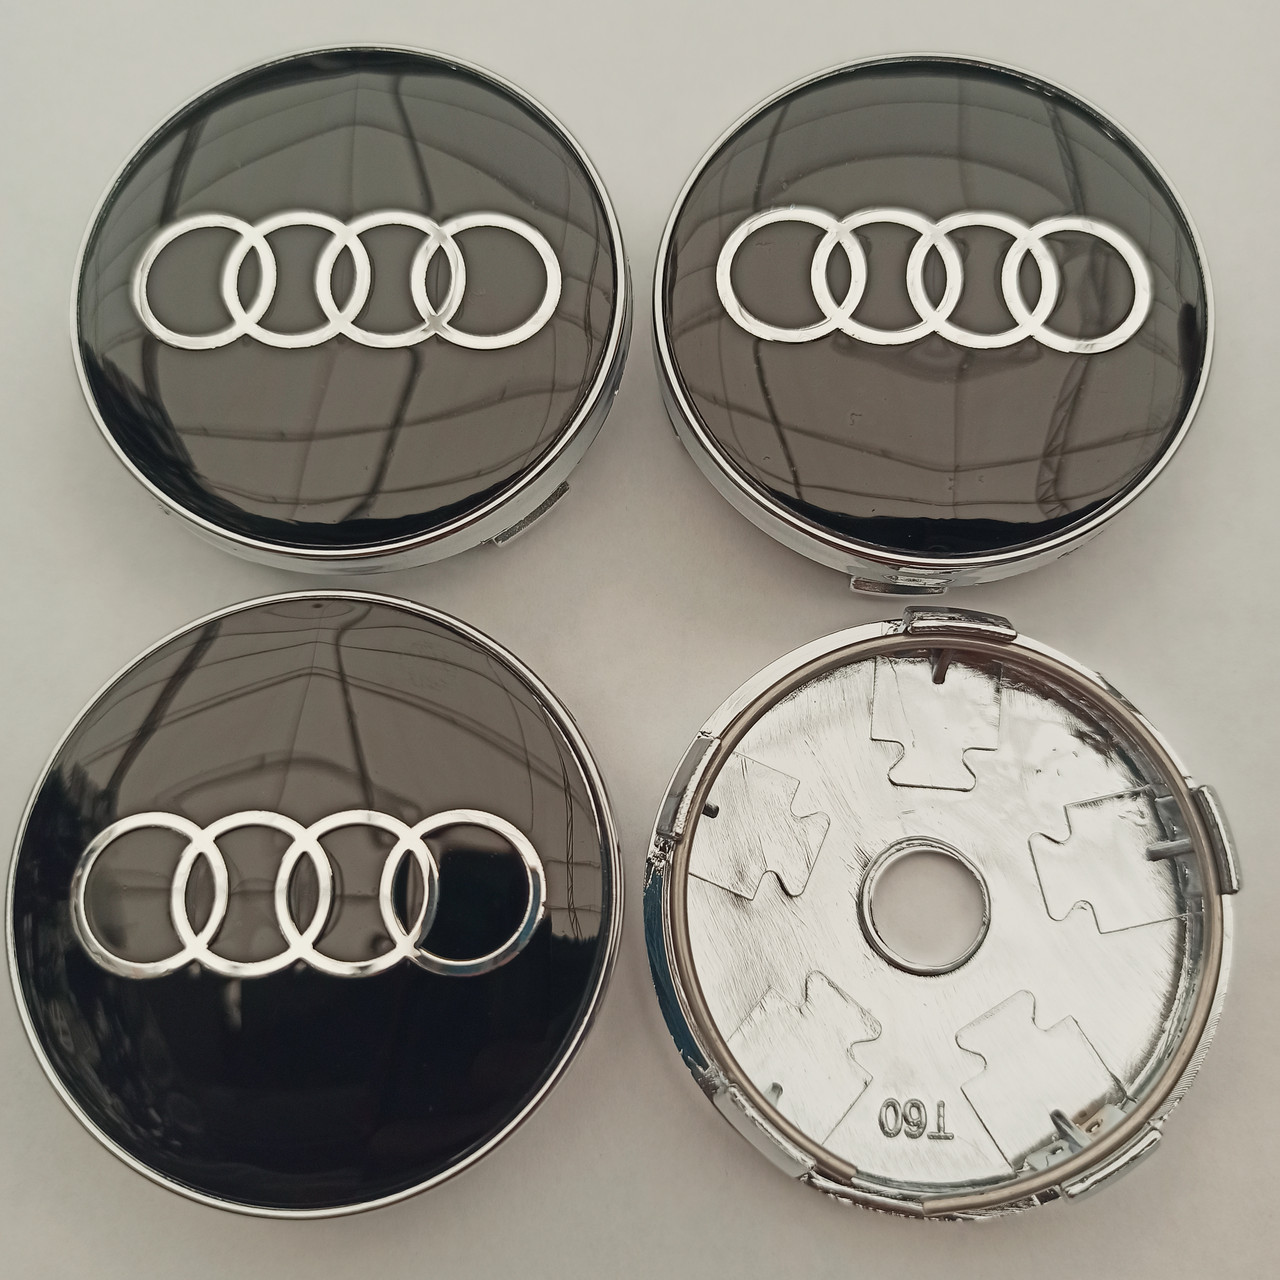 Ковпачки в диски Audi 56*60 мм чорні